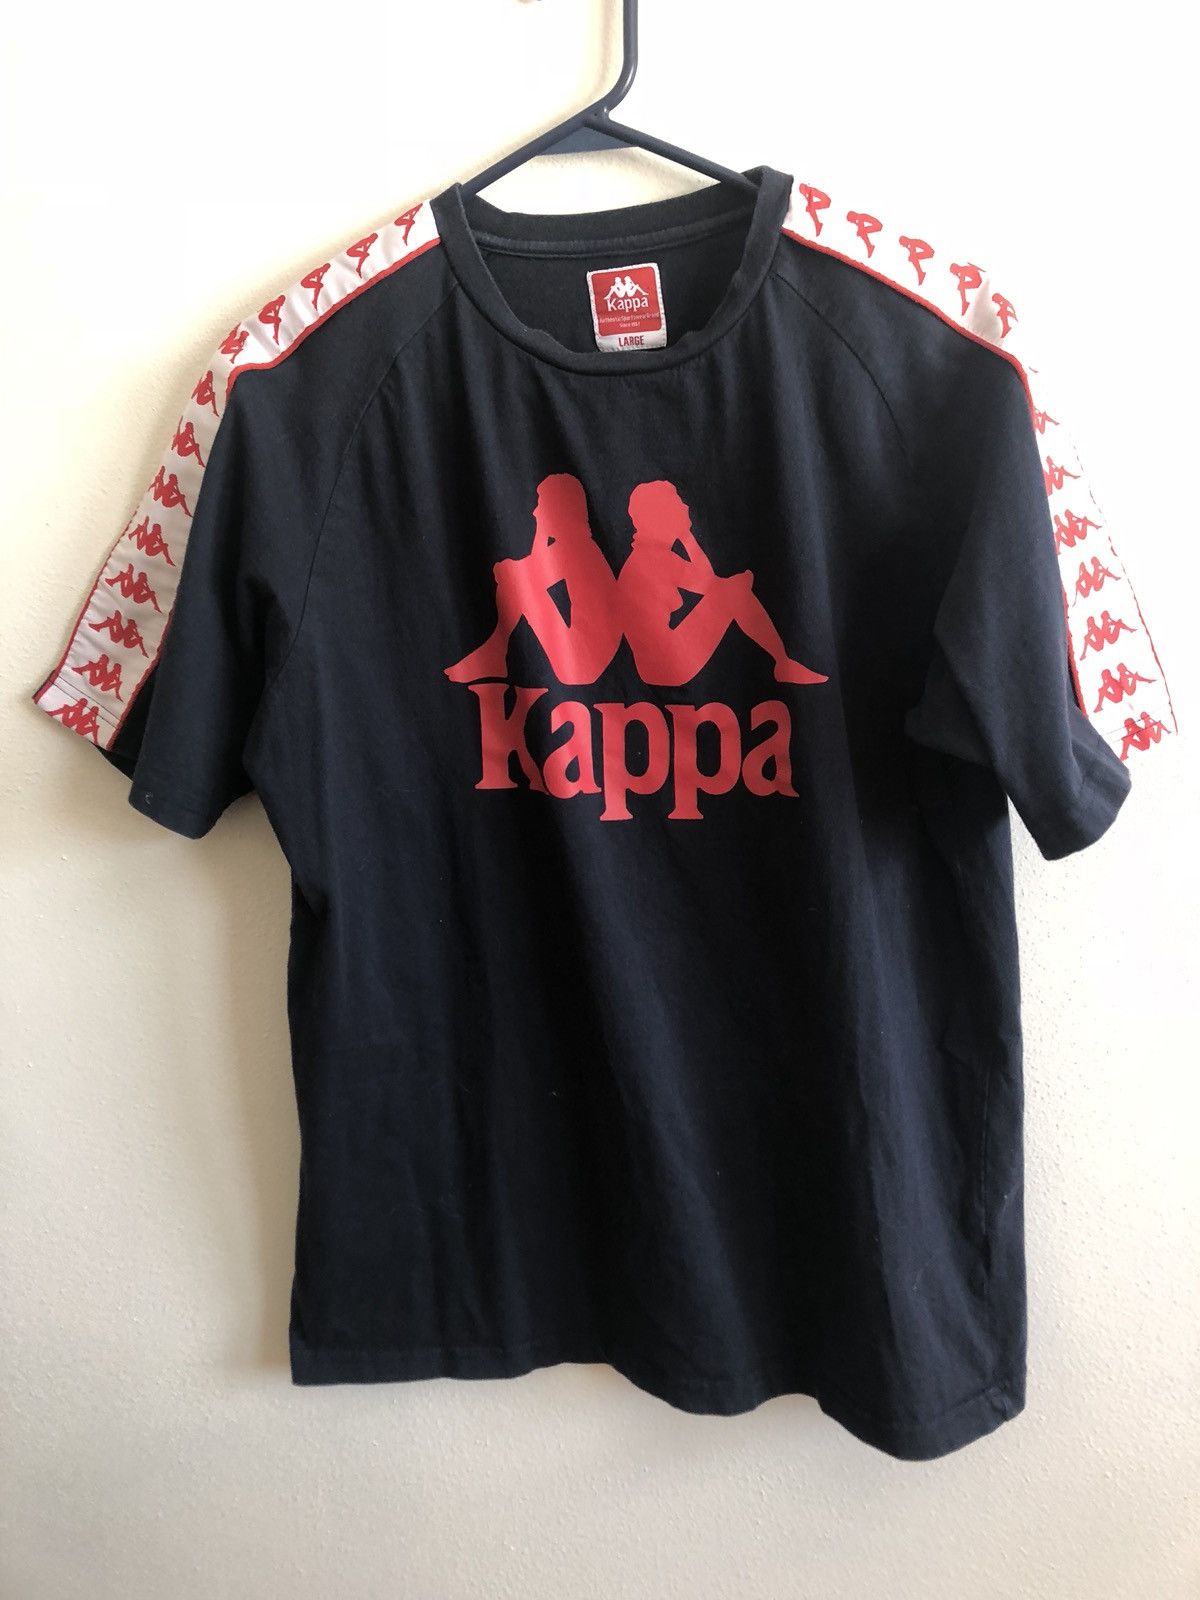 Undervisning Spændende struktur Kappa Red and black Kappa Shirt | Grailed